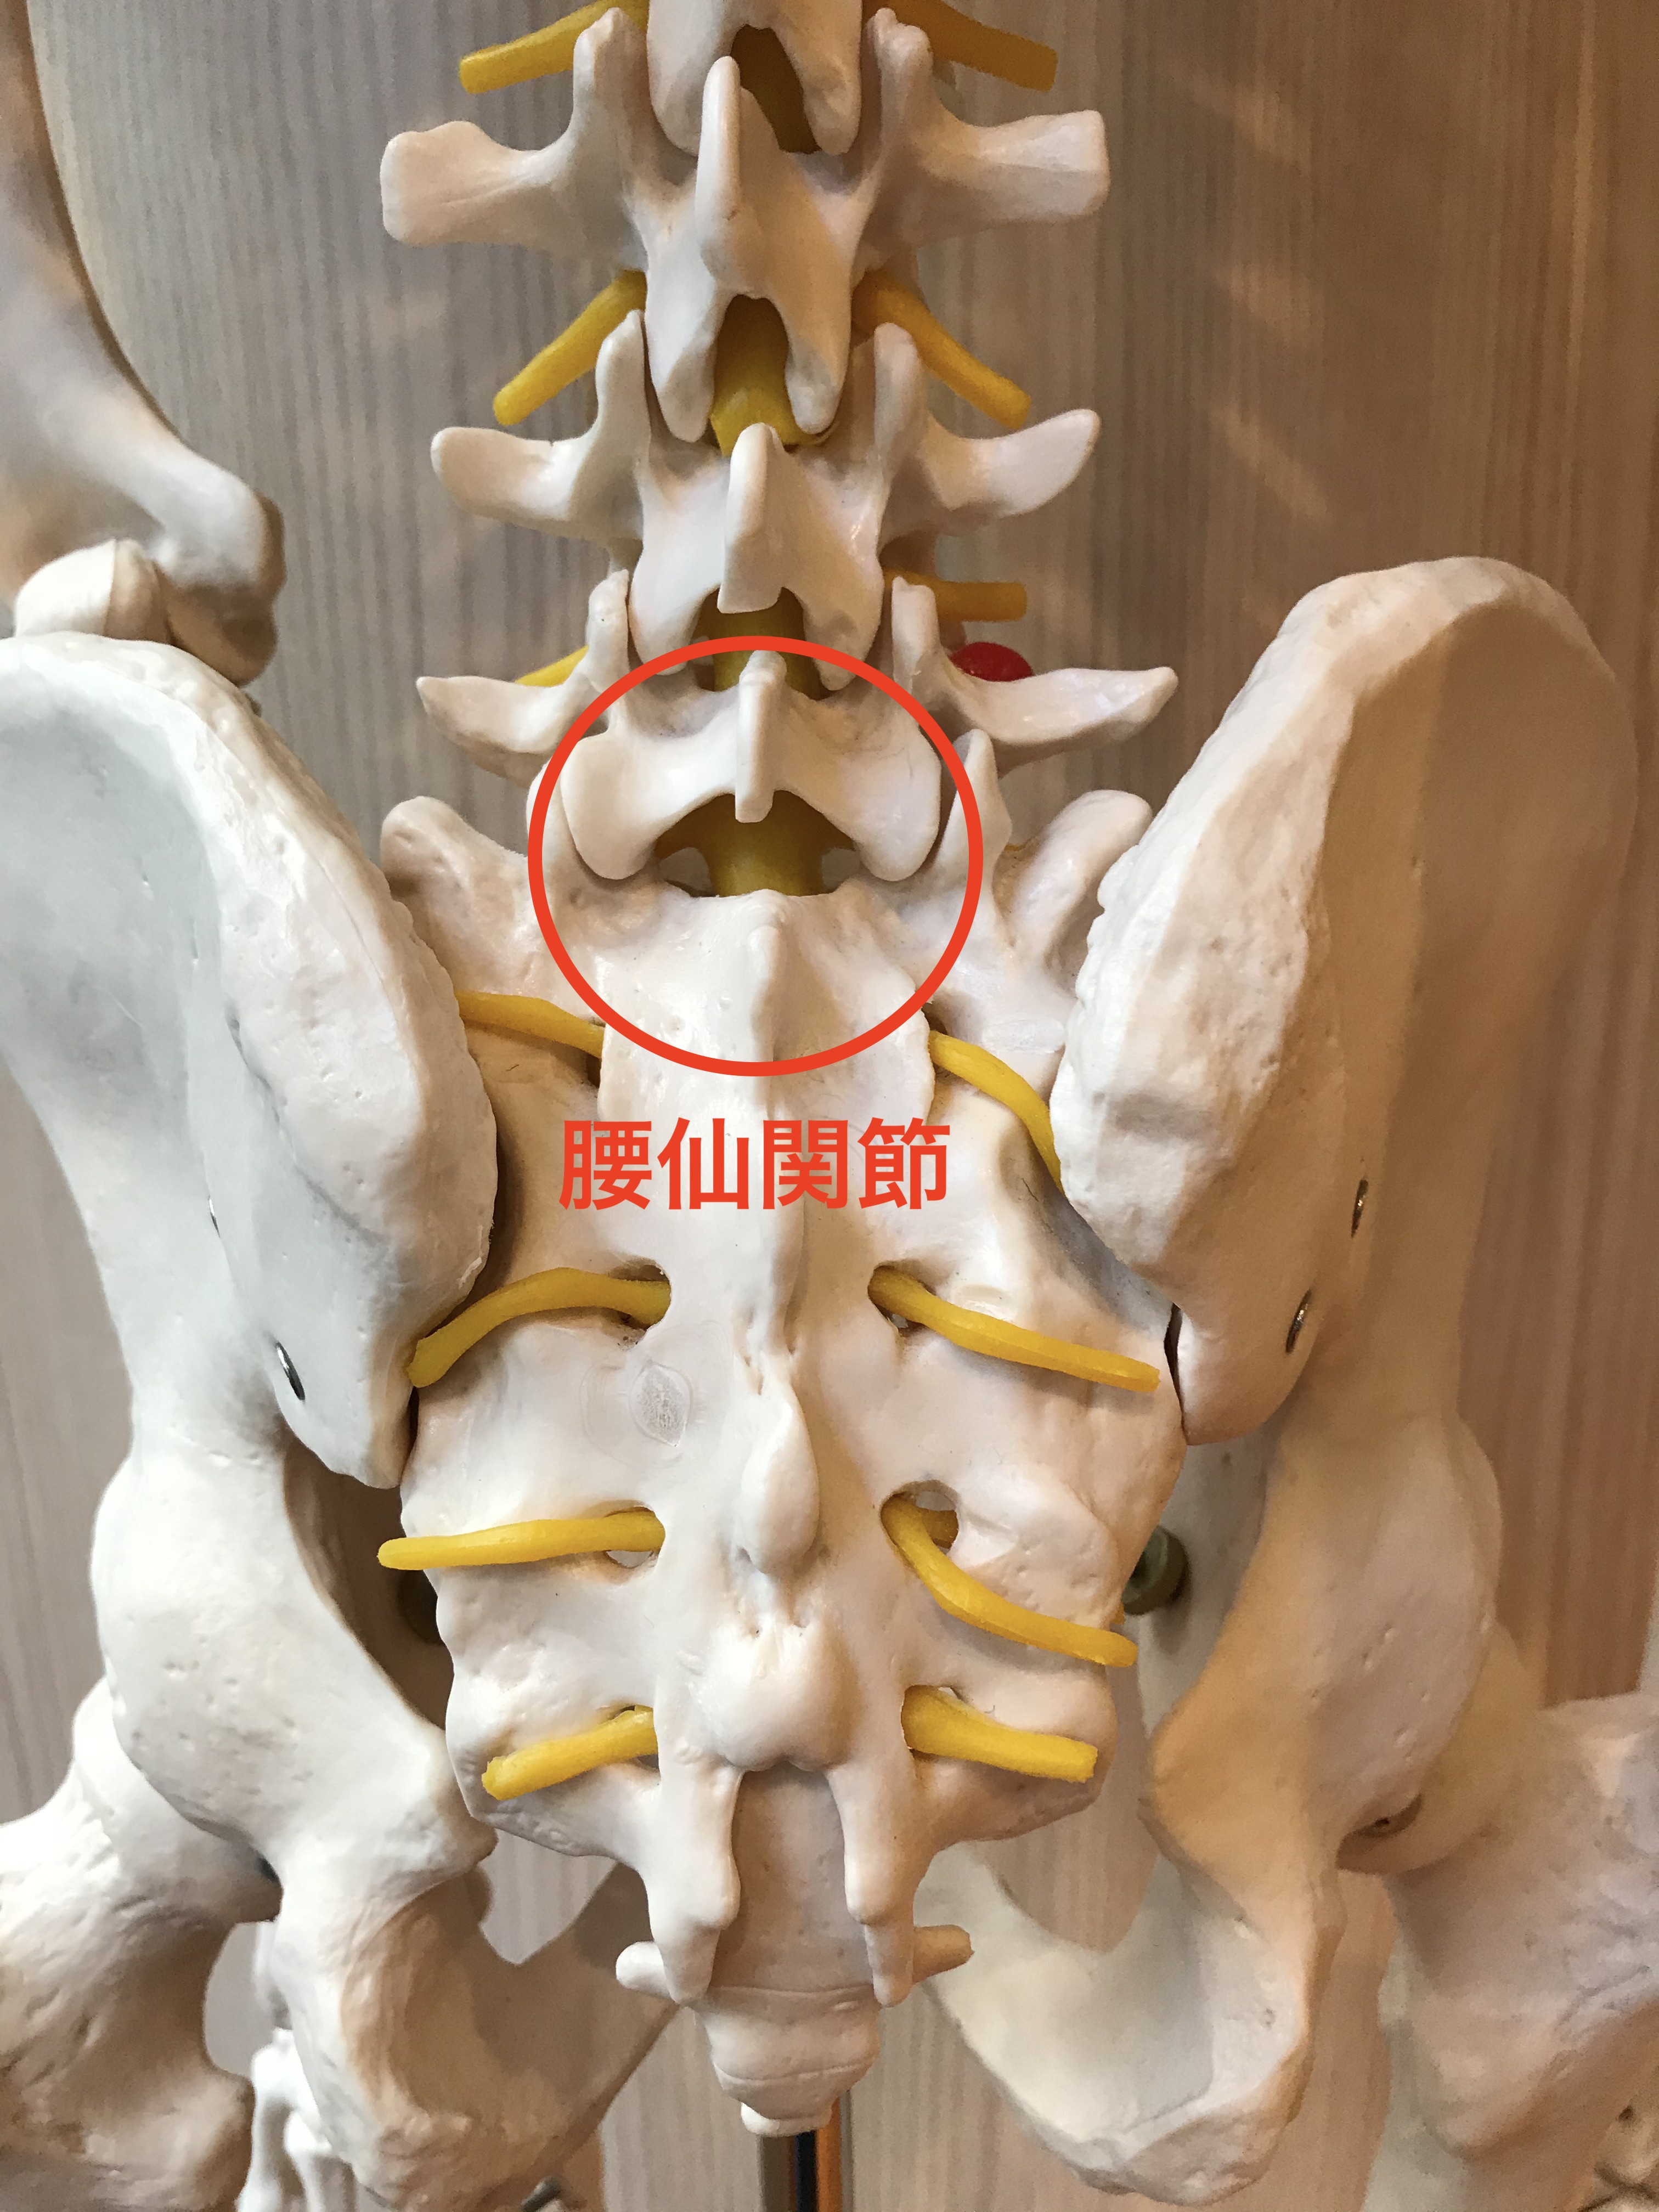 尾骨骨折やお尻強打による痛みの改善方法とは Kizuカイロプラクティック整体本院